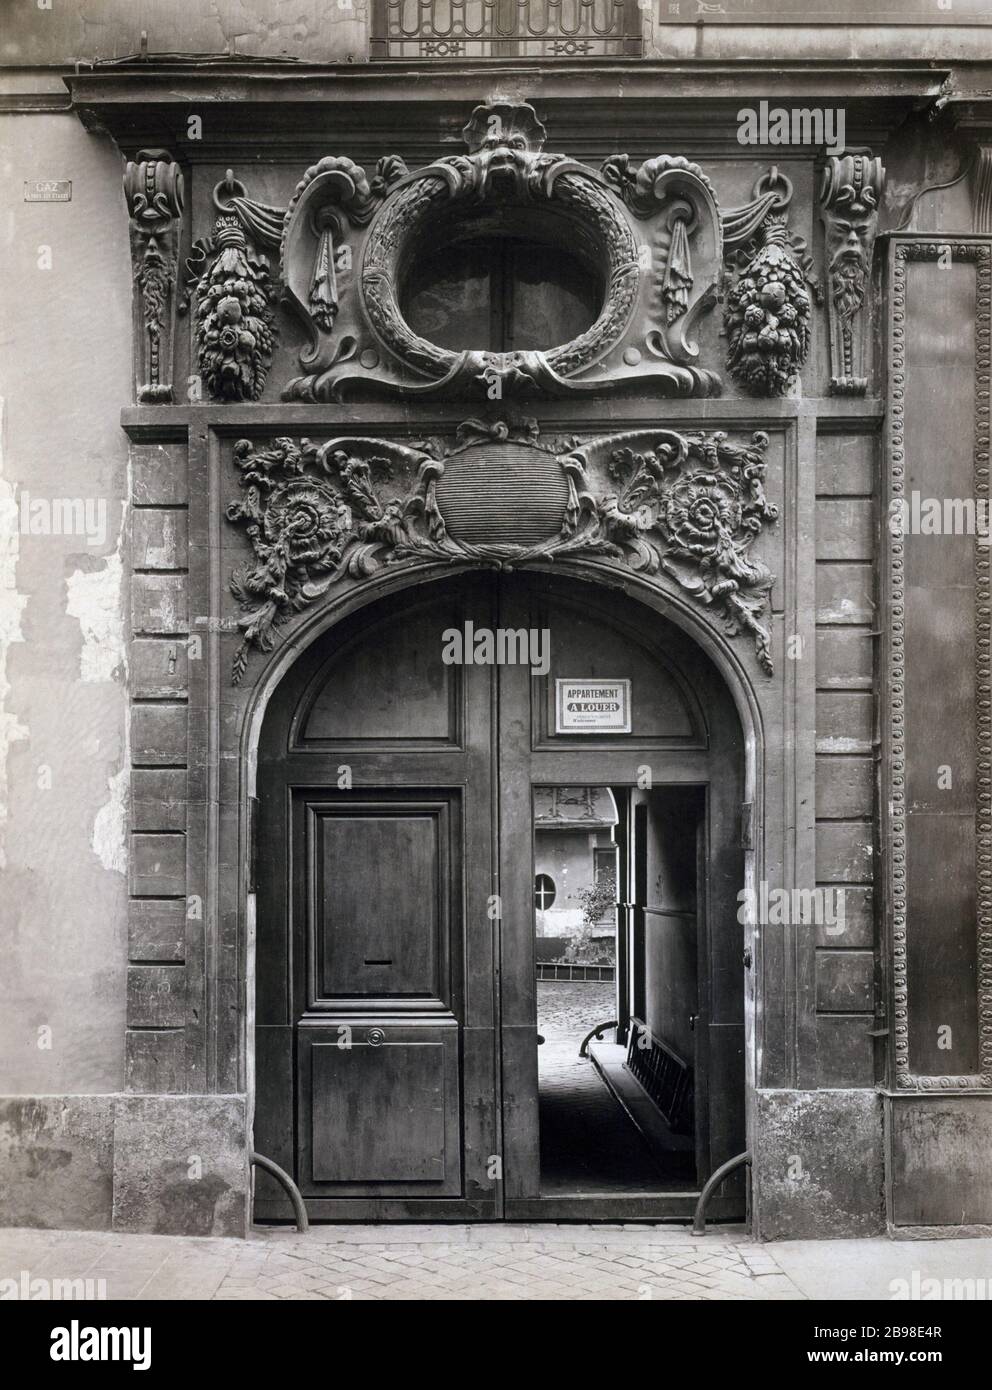 27 SAINT-SULPICE 27, rue Saint-Sulpice. Paris (VIème arr.). Photographie de Charles Lansiaux (1855-1939). Paris, musée Carnavalet. Stock Photo